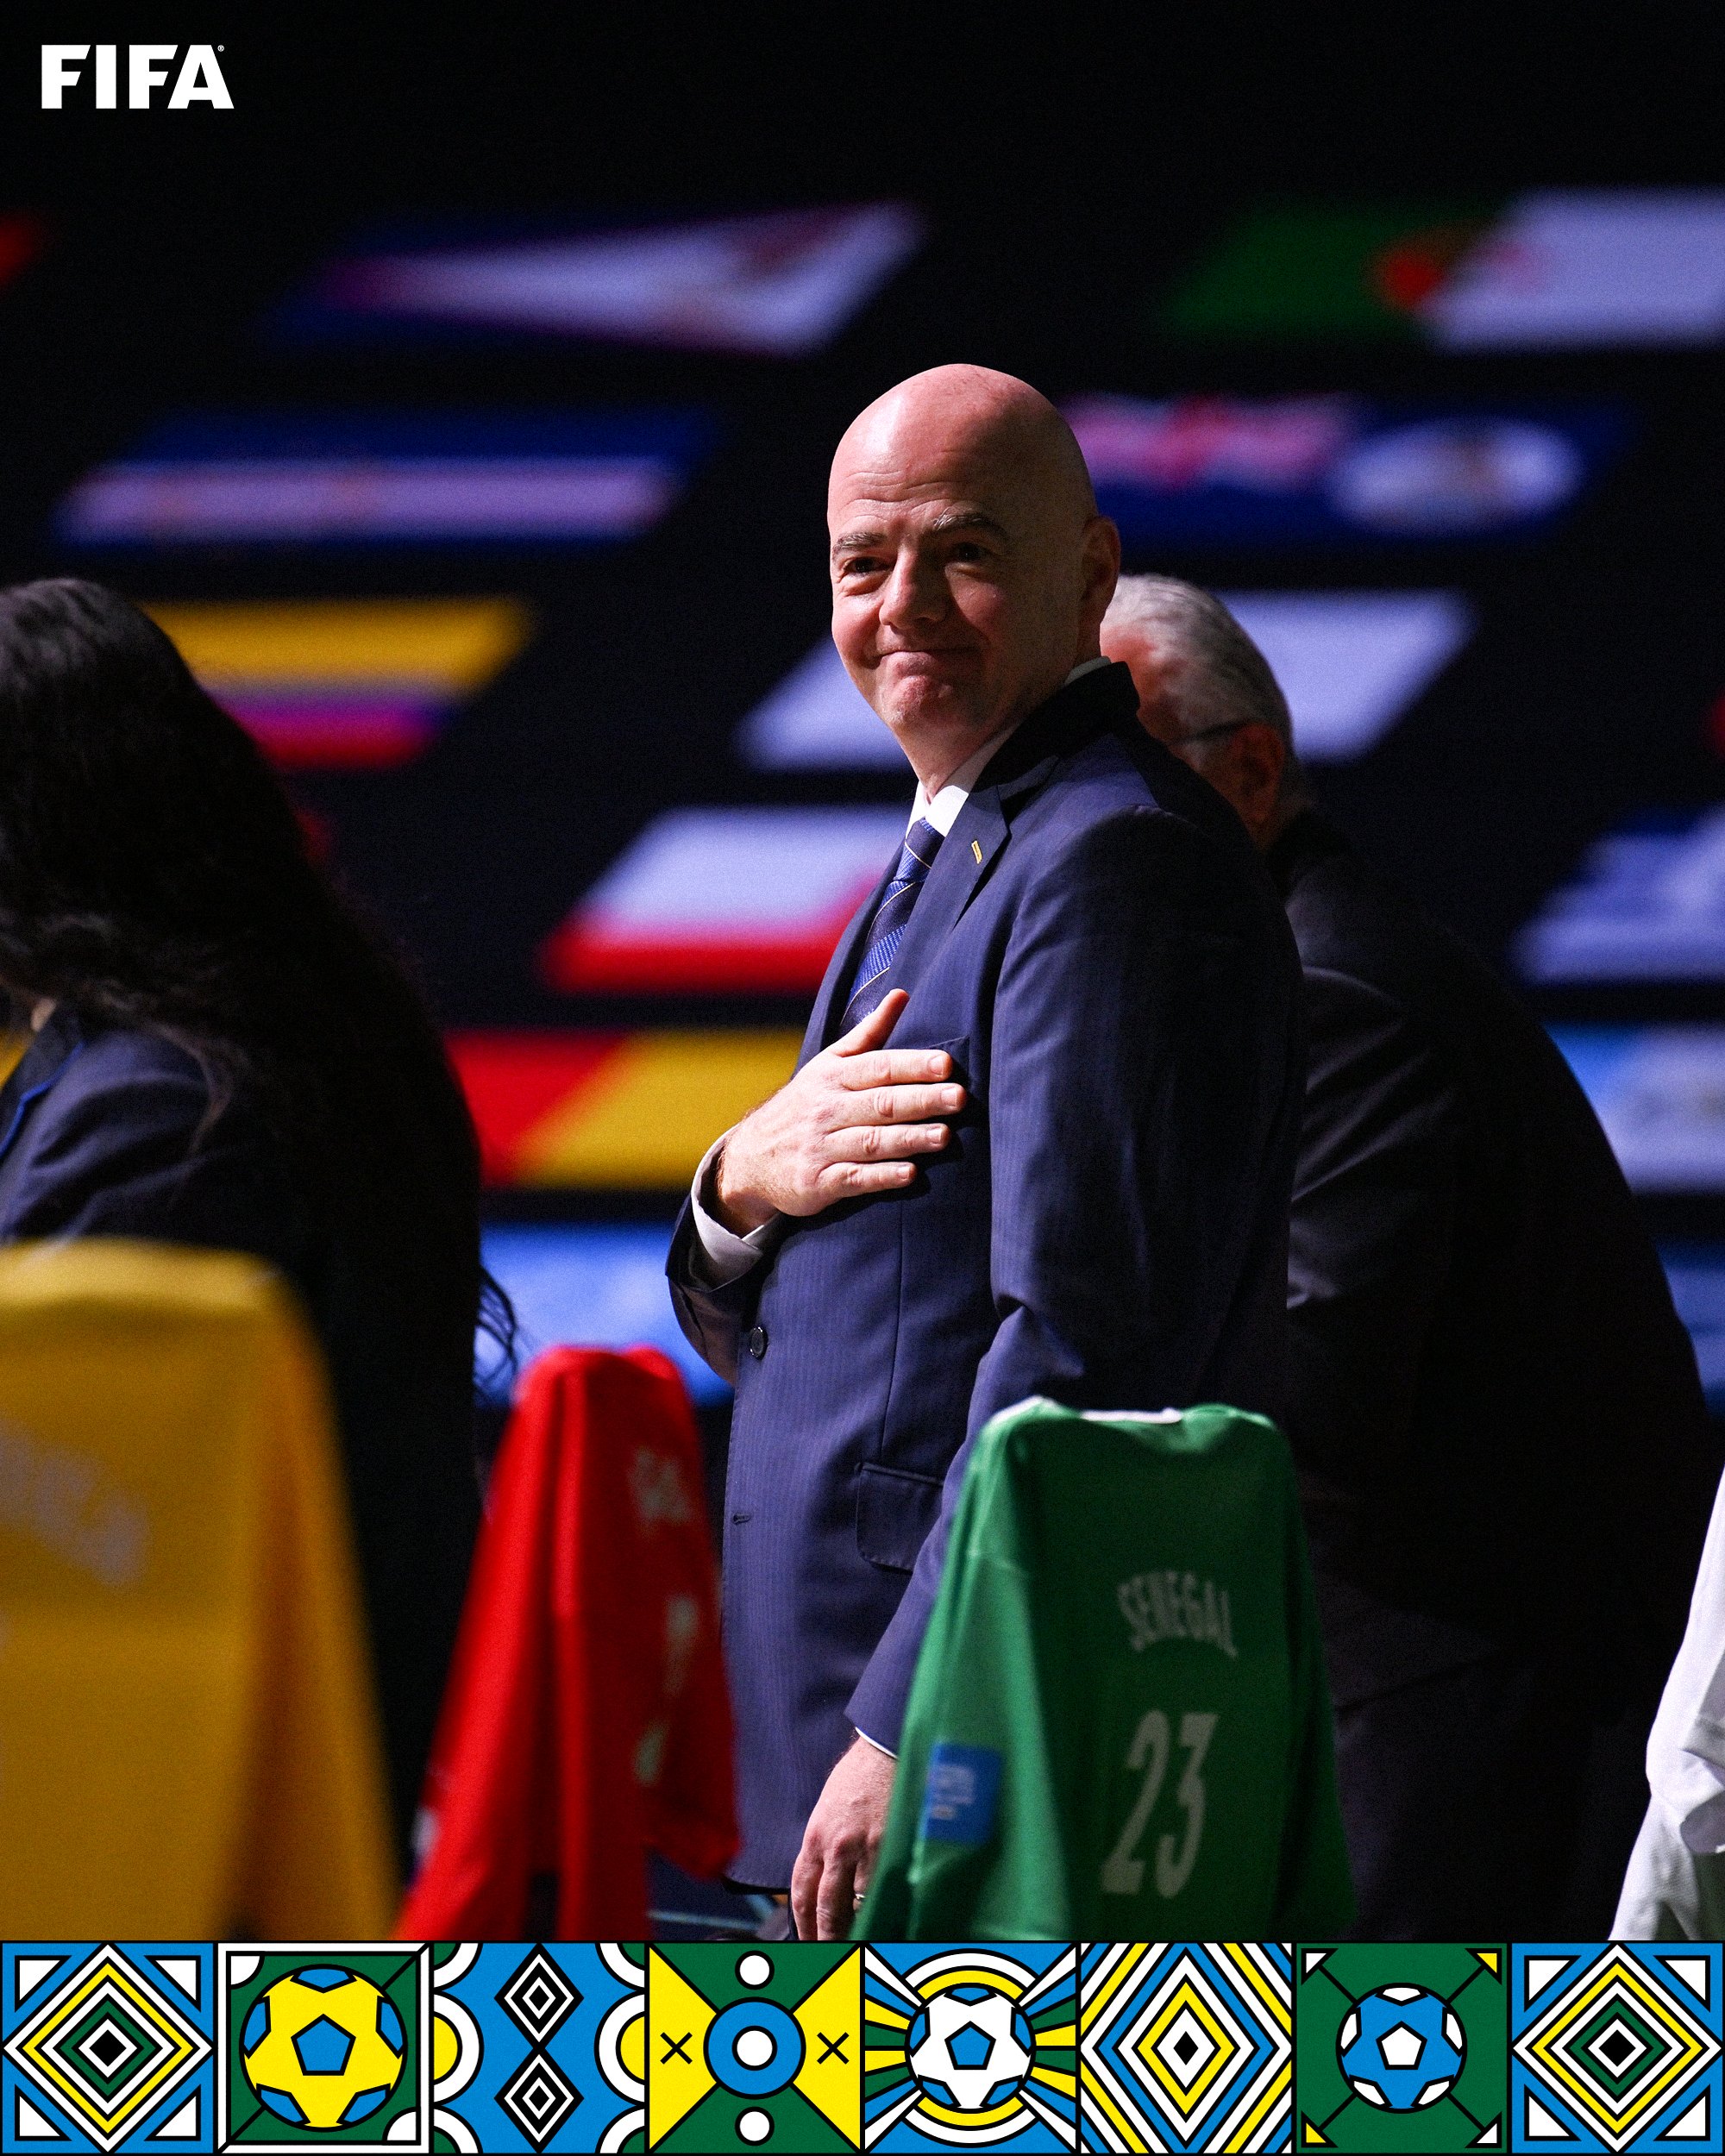 FIFA : en poste depuis 2016, Gianni Infantino réélu président jusqu’en 2027